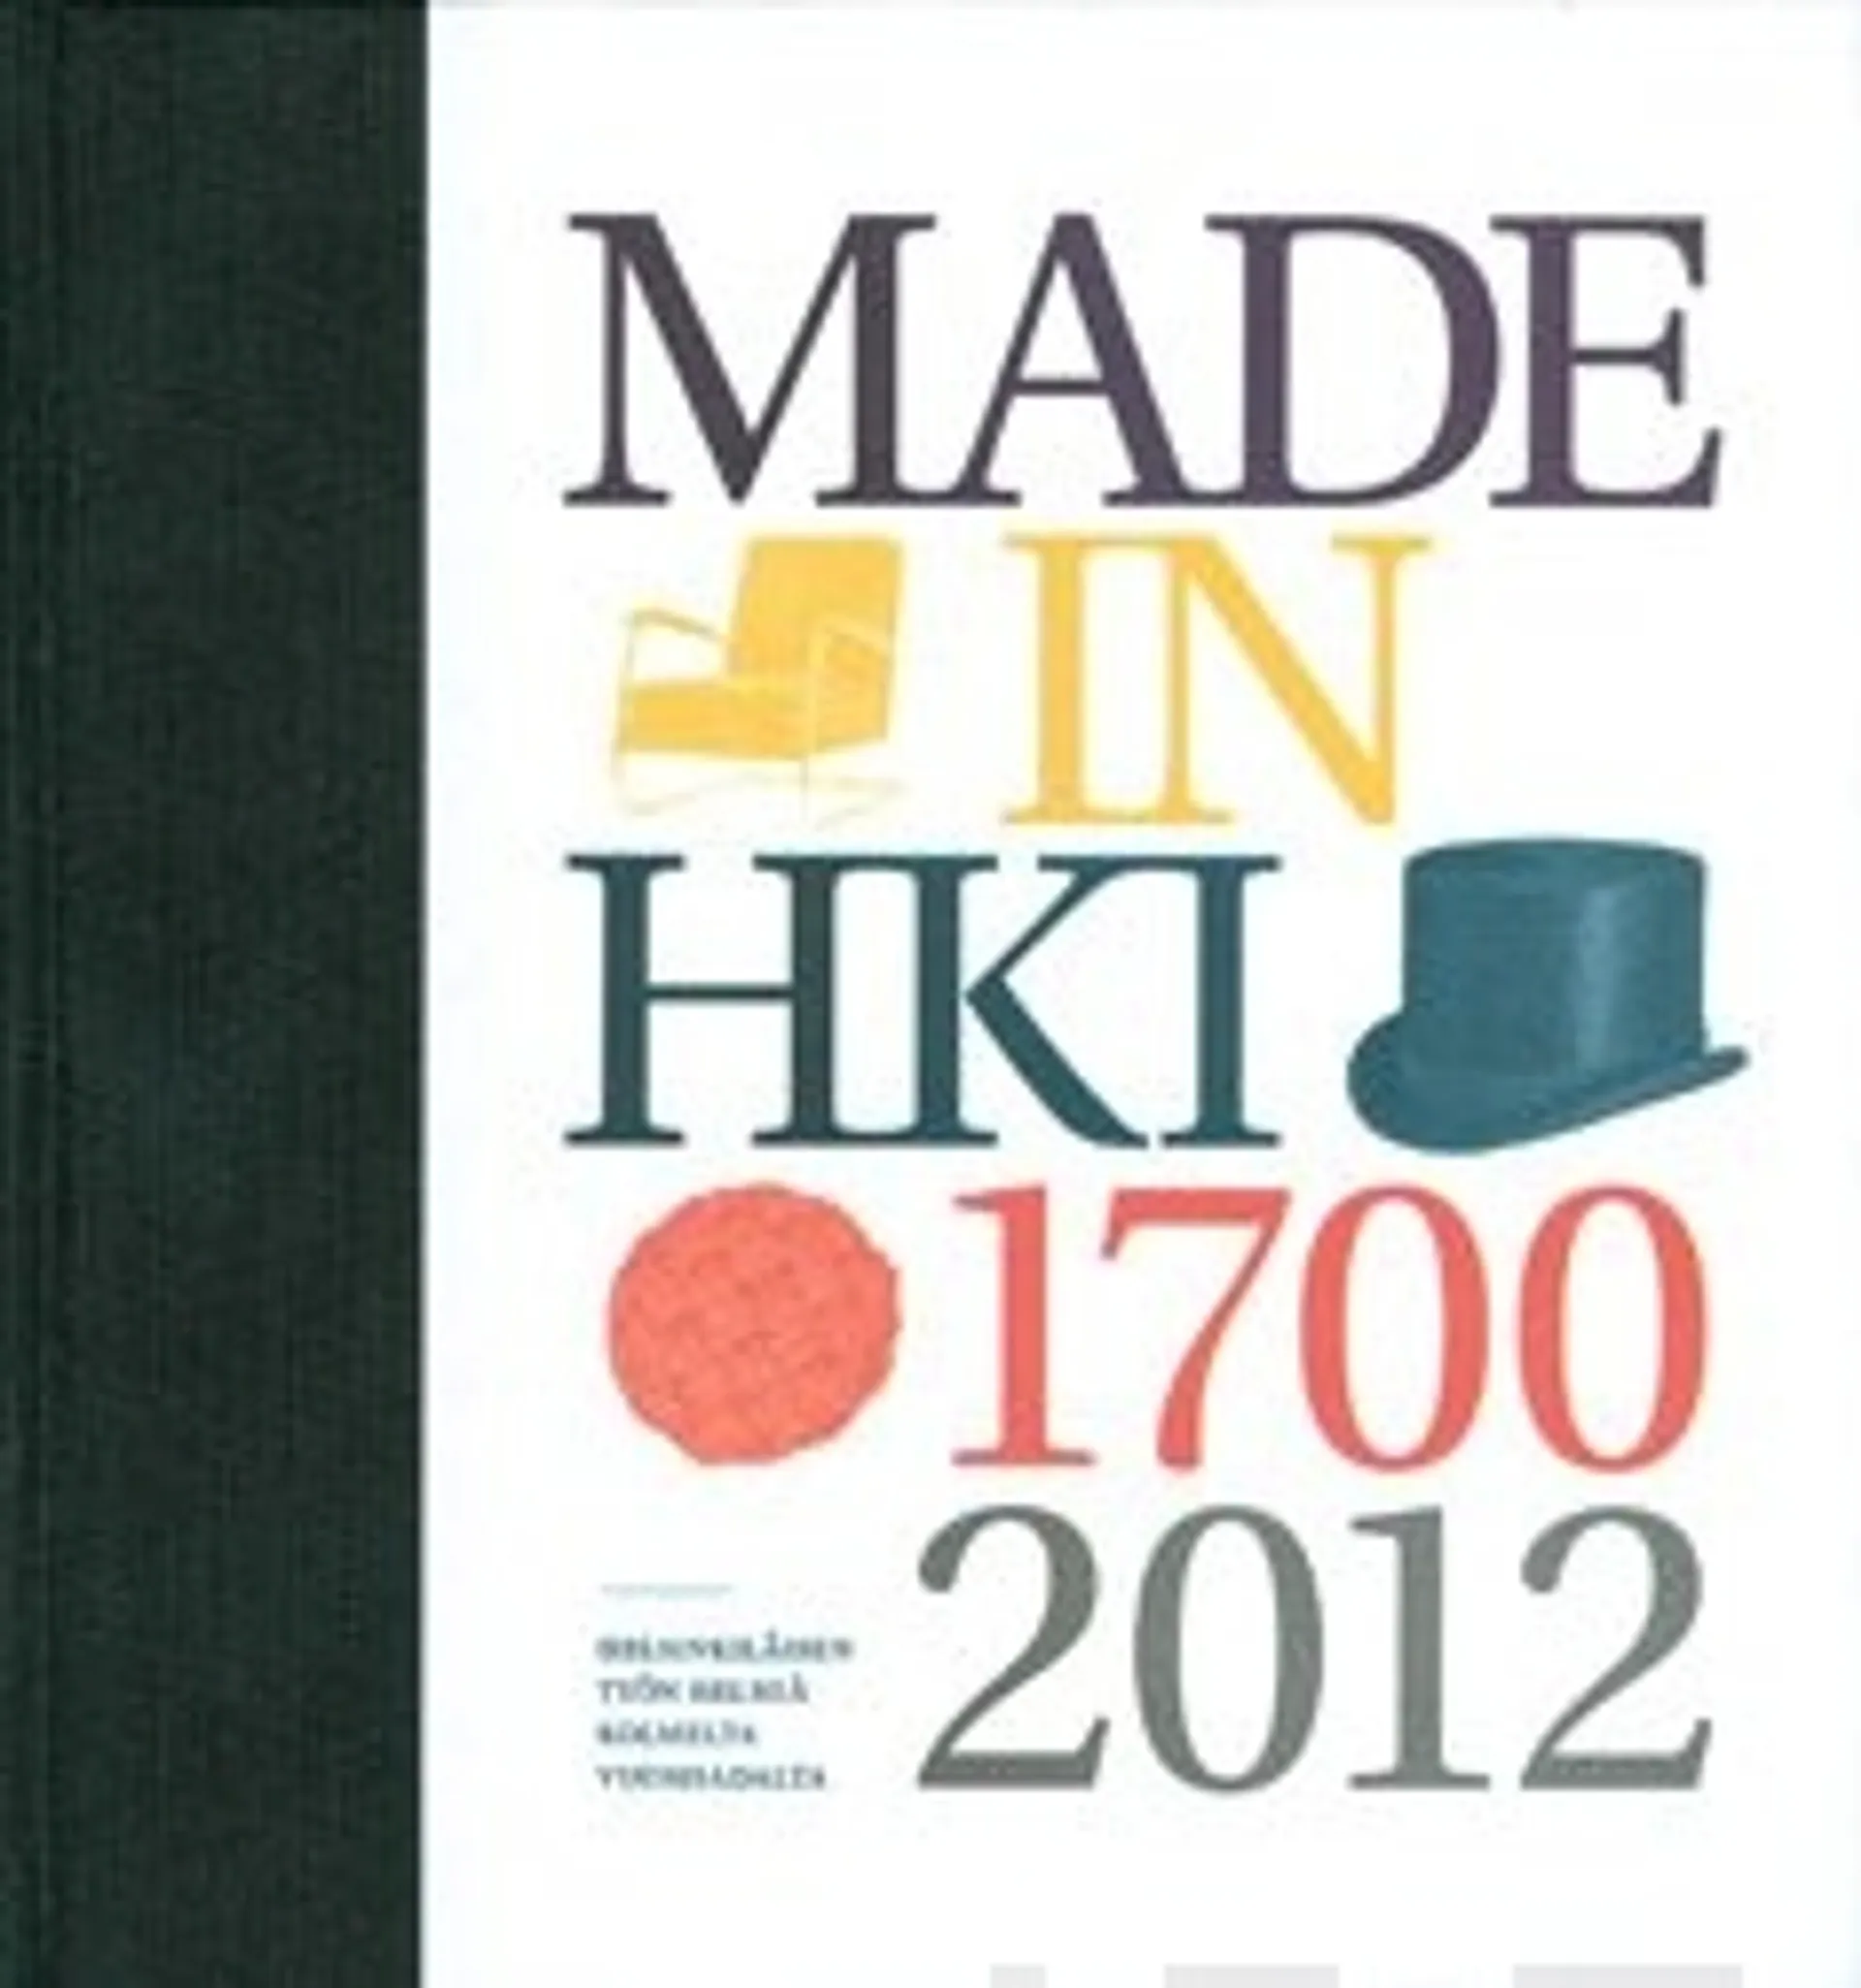 Made in Helsinki 1700-2012